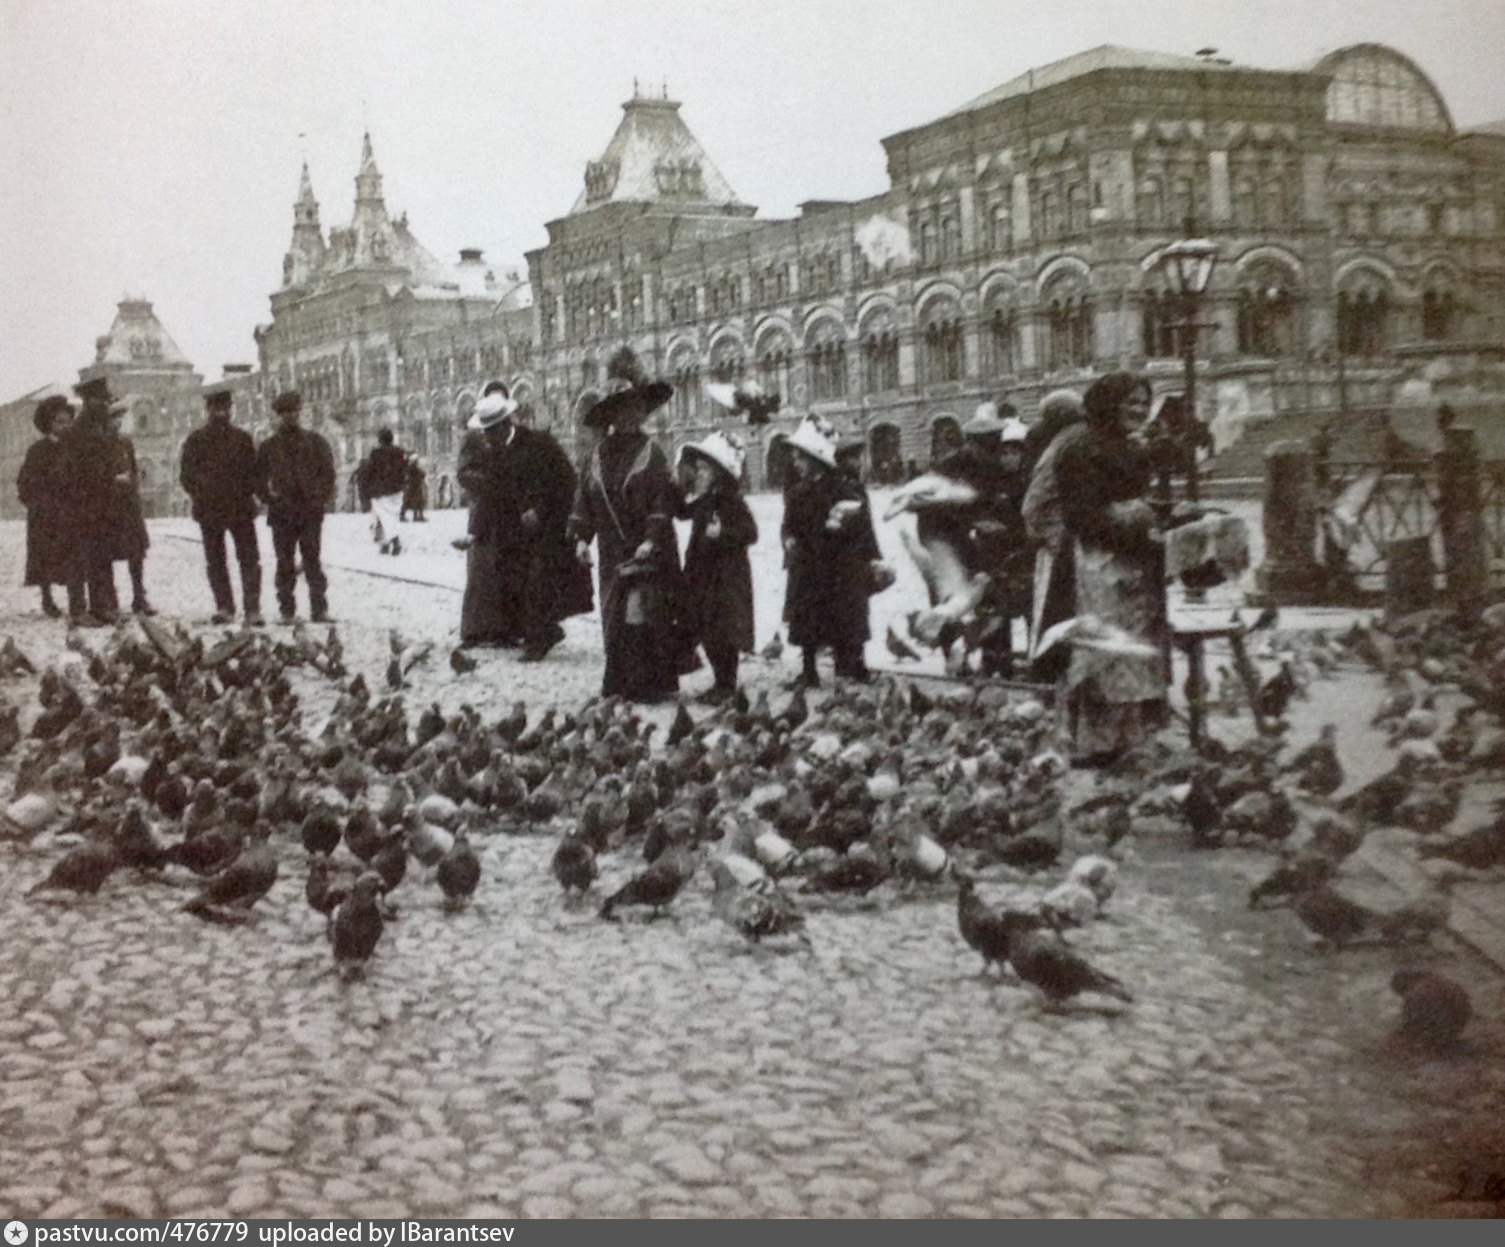 Видео начала 20 века. Рынок на красной площади в 19 веке. Москва в начале 20 века. Голуби на красной площади. Кормление голубей на красной площади.